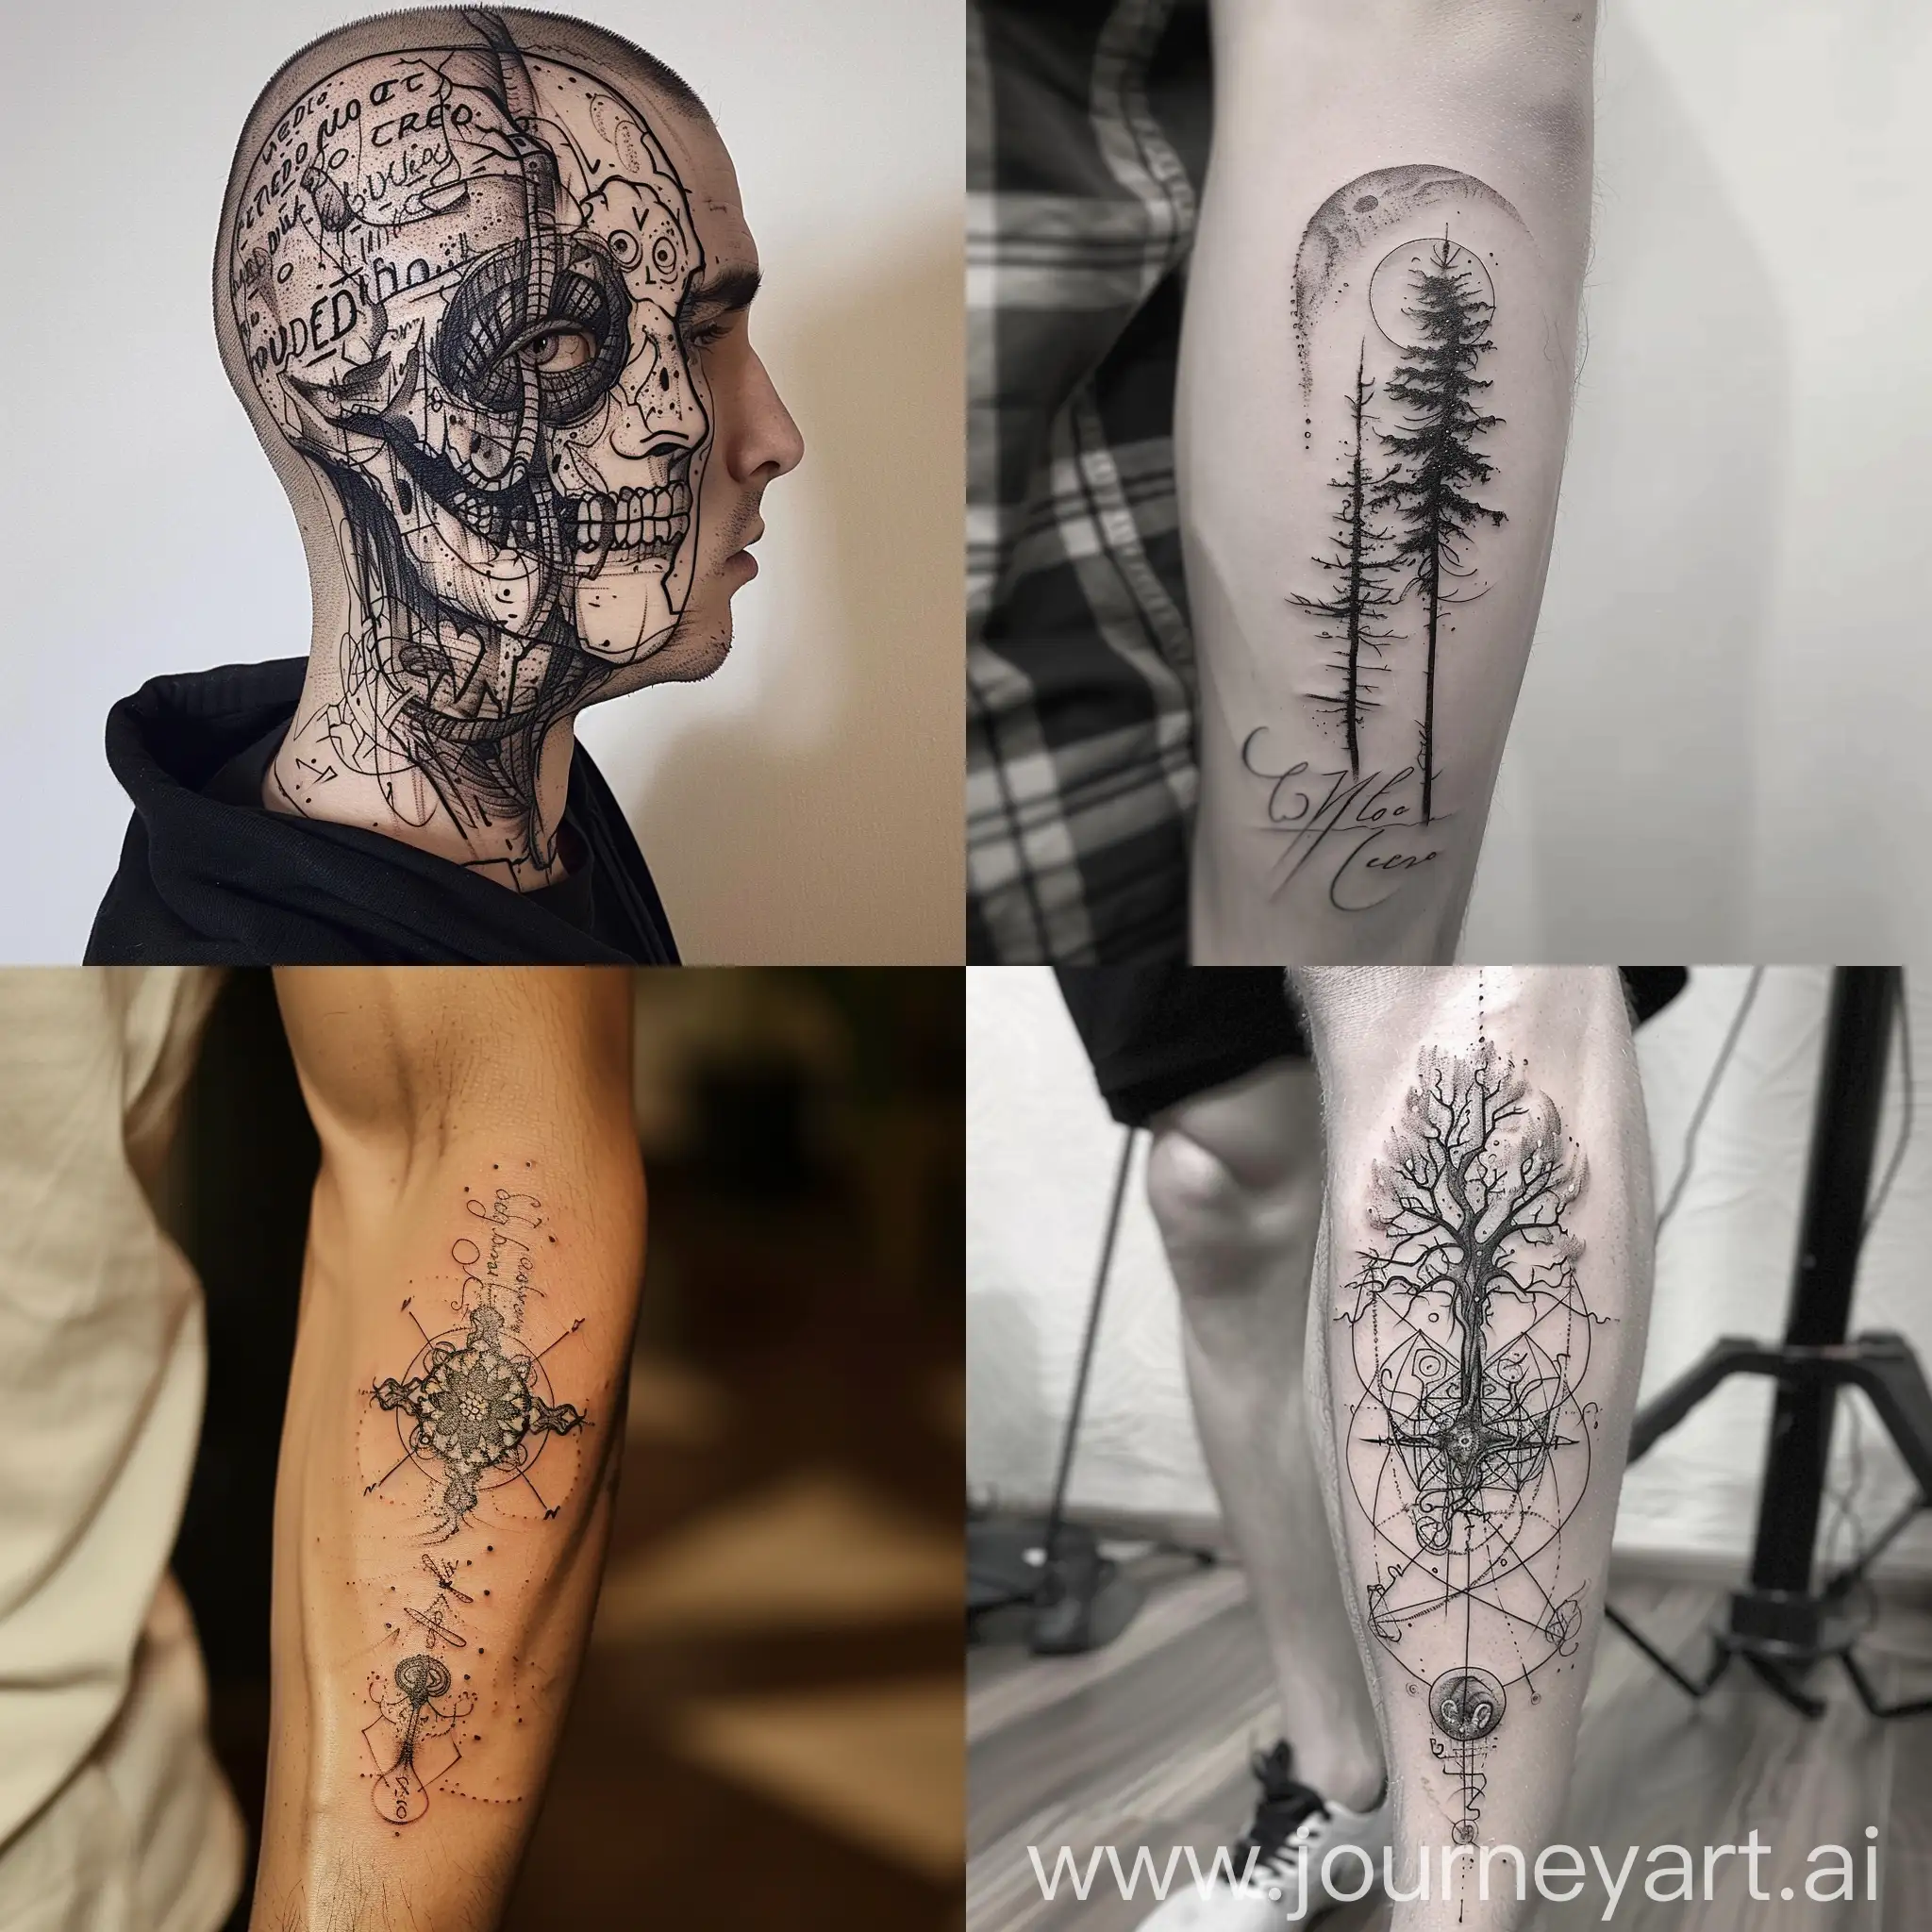  Transforme a frase "medo de ter medo de termo" em uma tatuagem única e poderosa